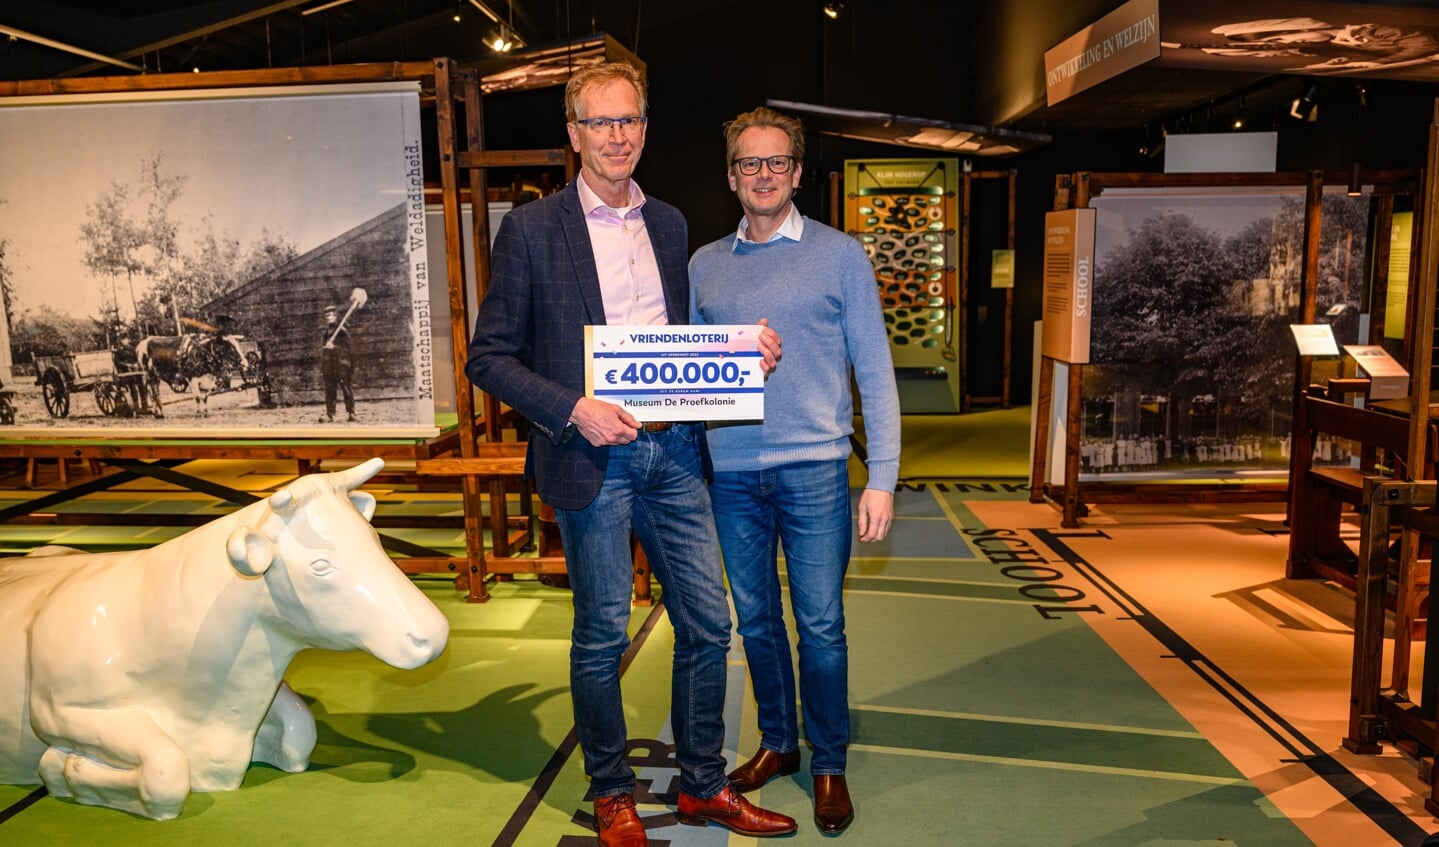 Museum de Proefkolonie ontvangt een schenking van 400.000 euro van uit handen van Jeroen Branderhorst van de VriendenLoterij 